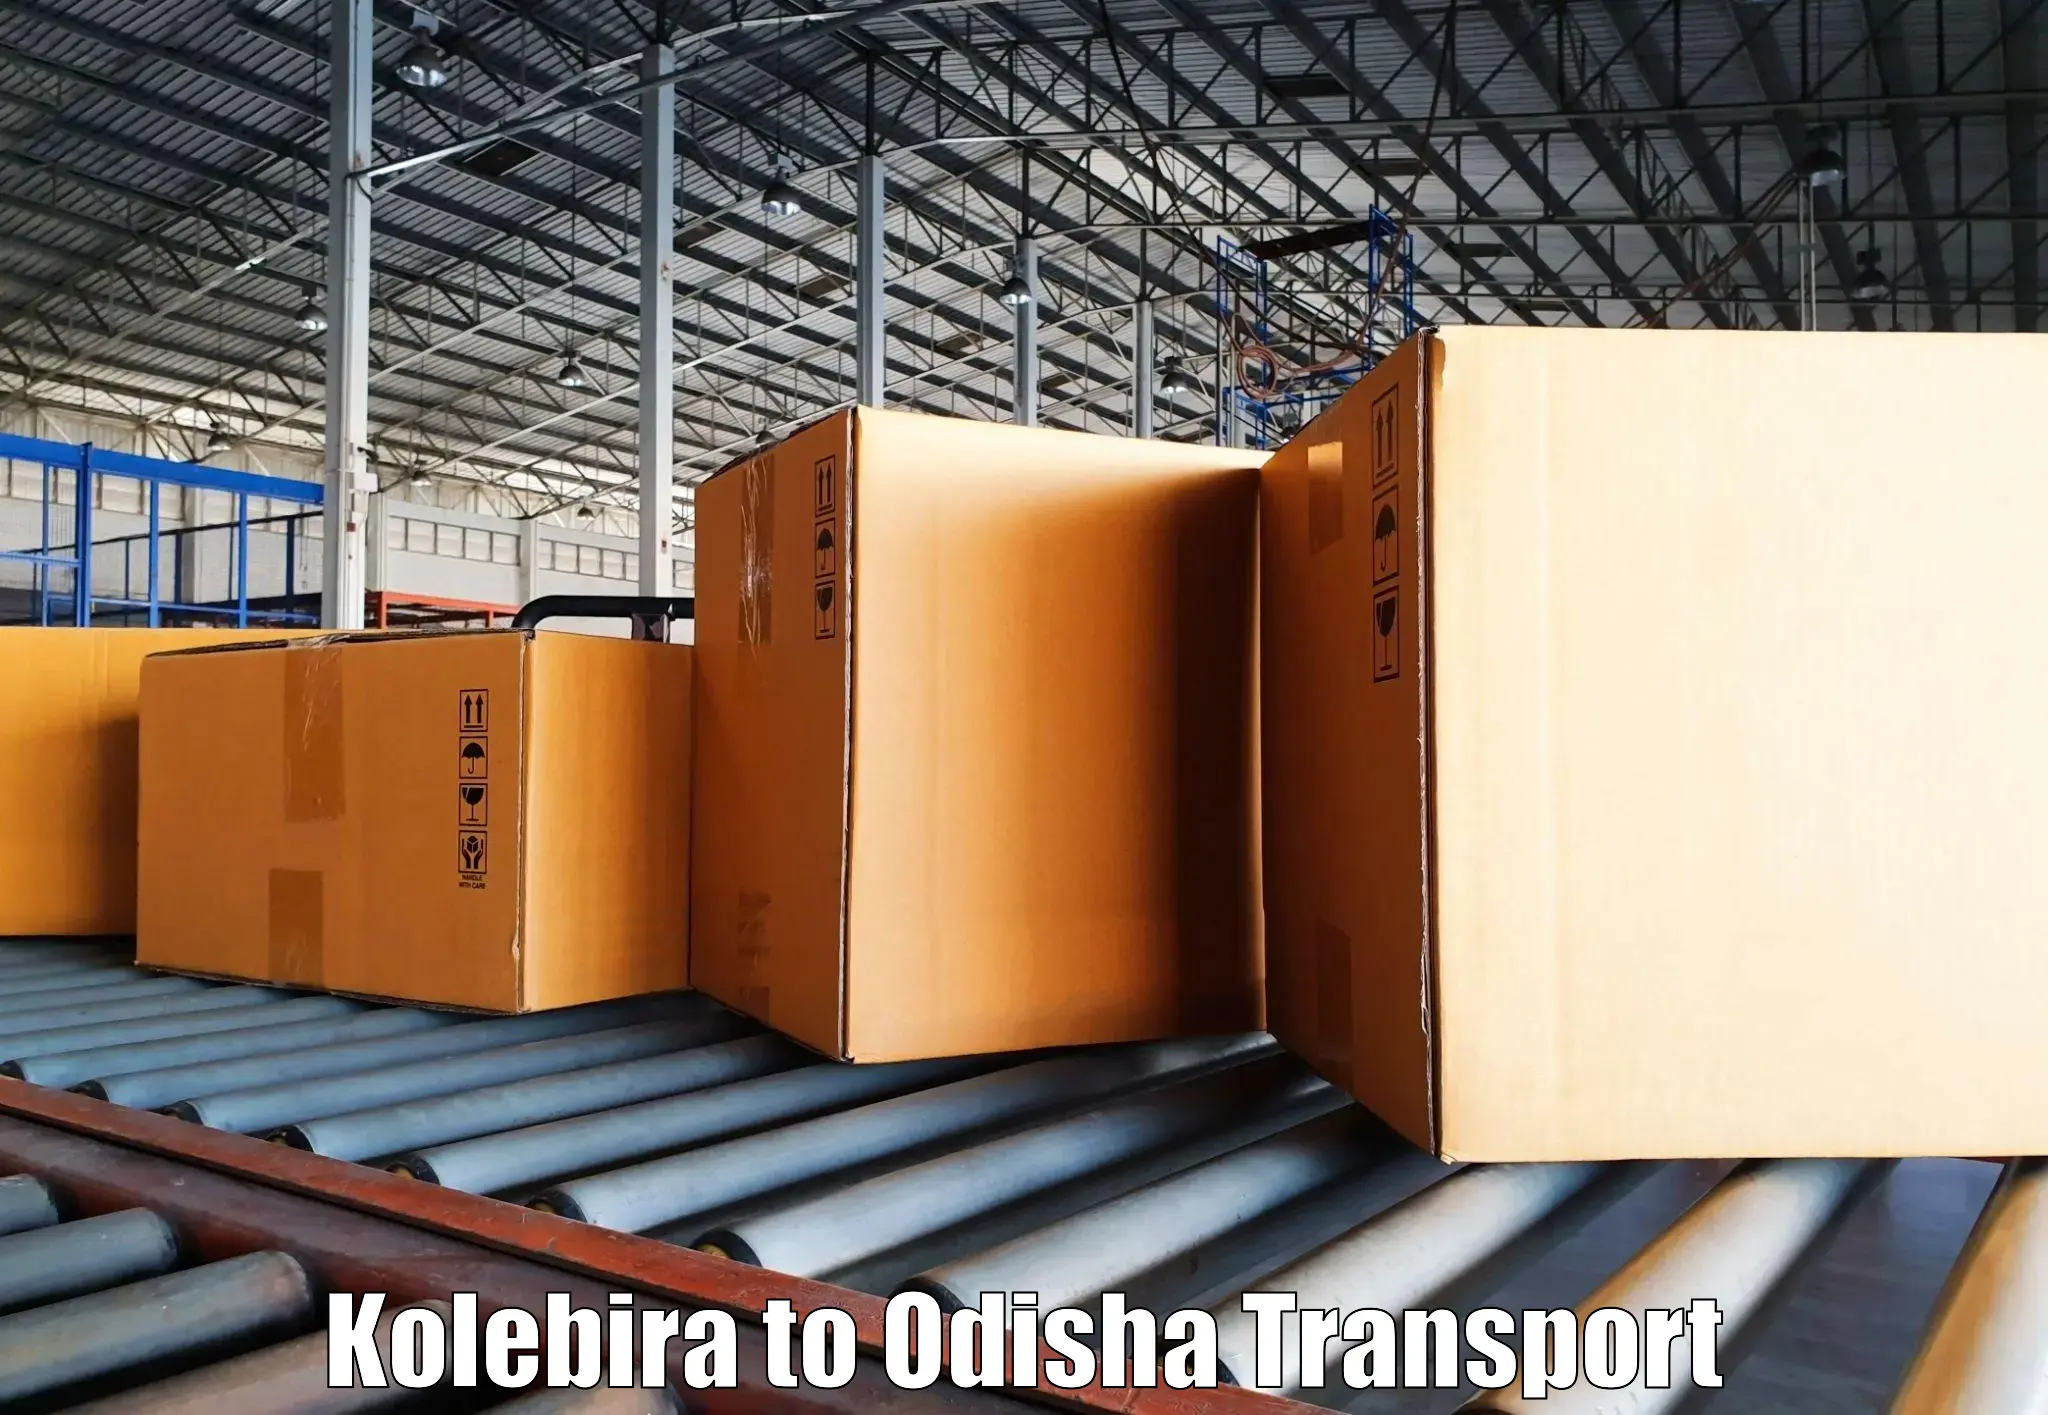 Bike transport service Kolebira to Koraput